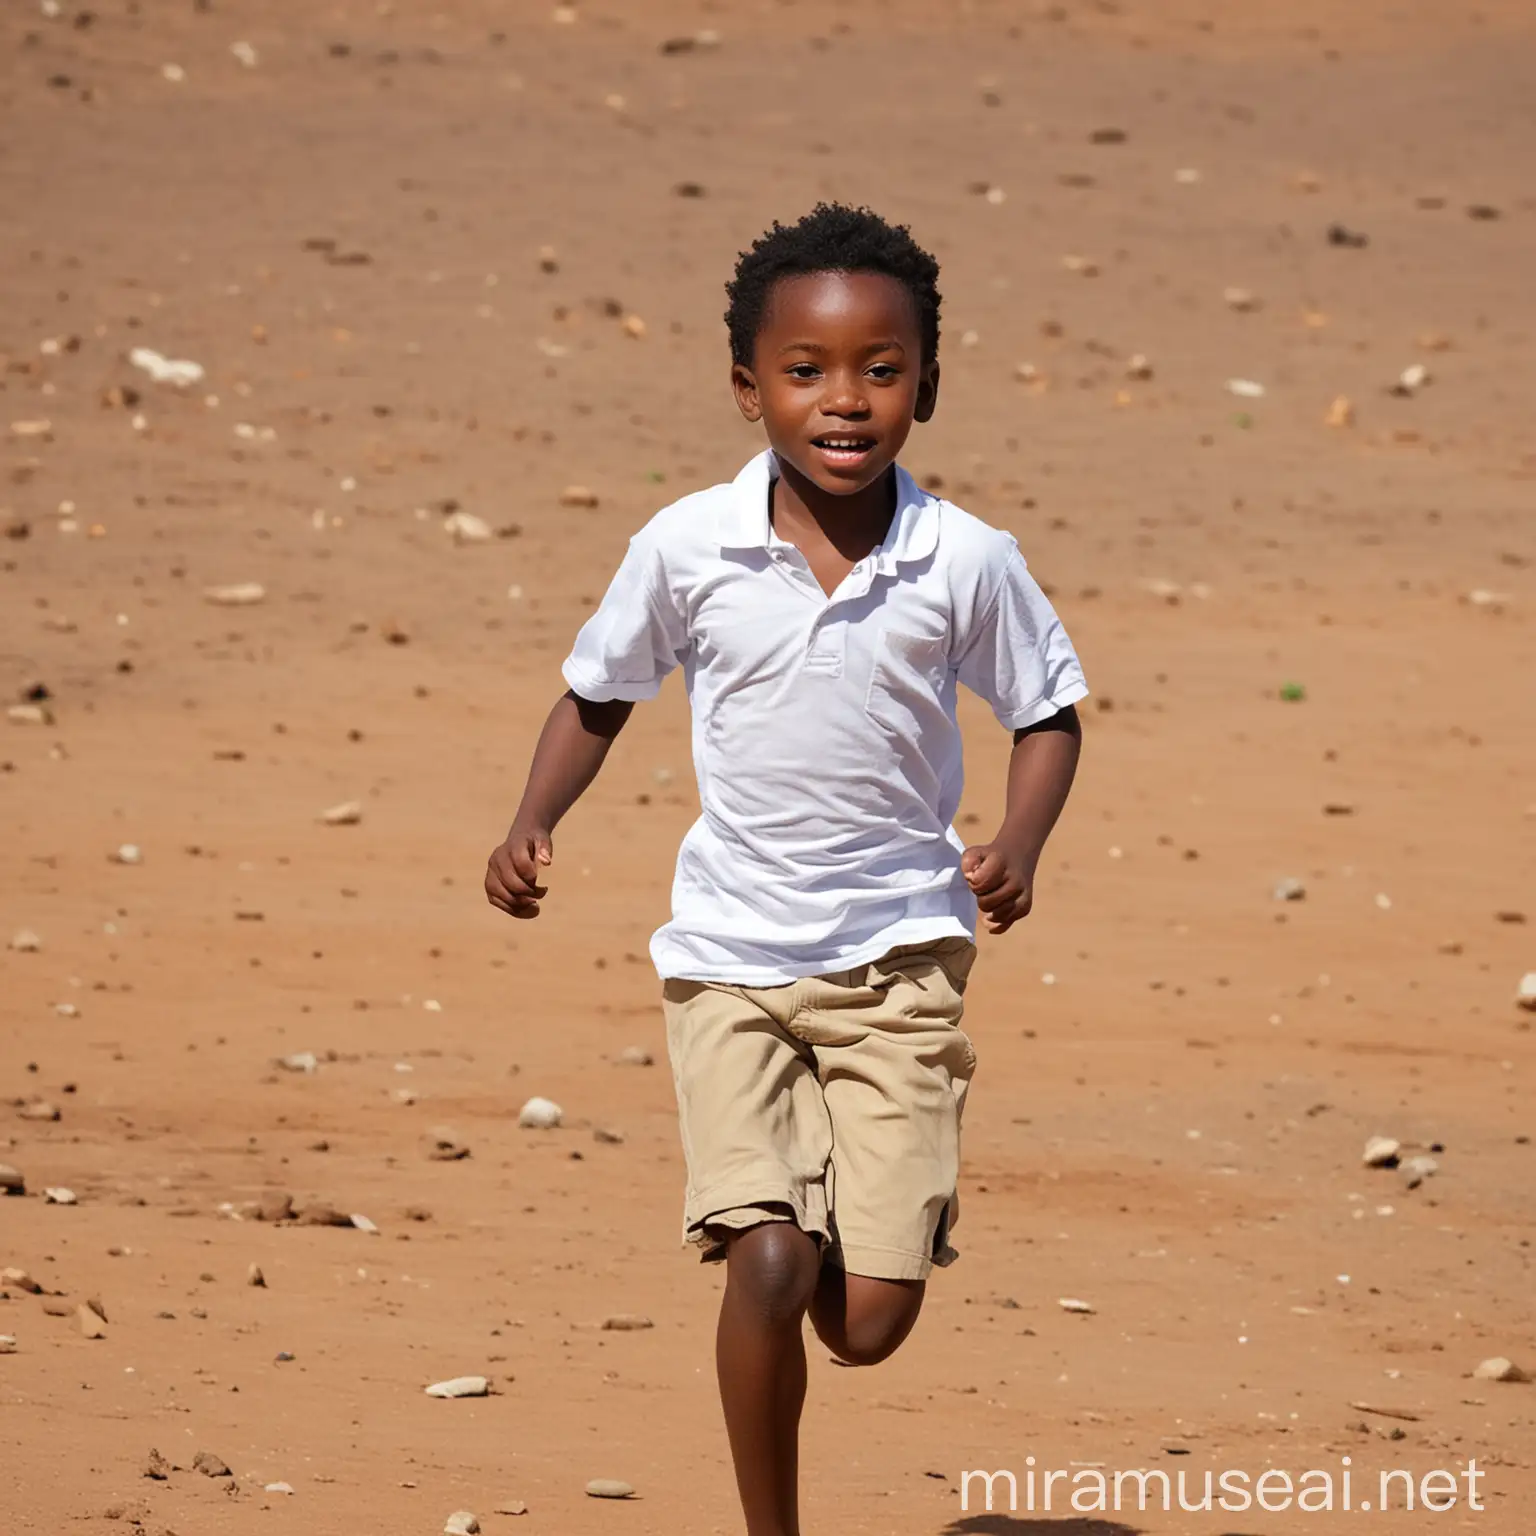 African school child running